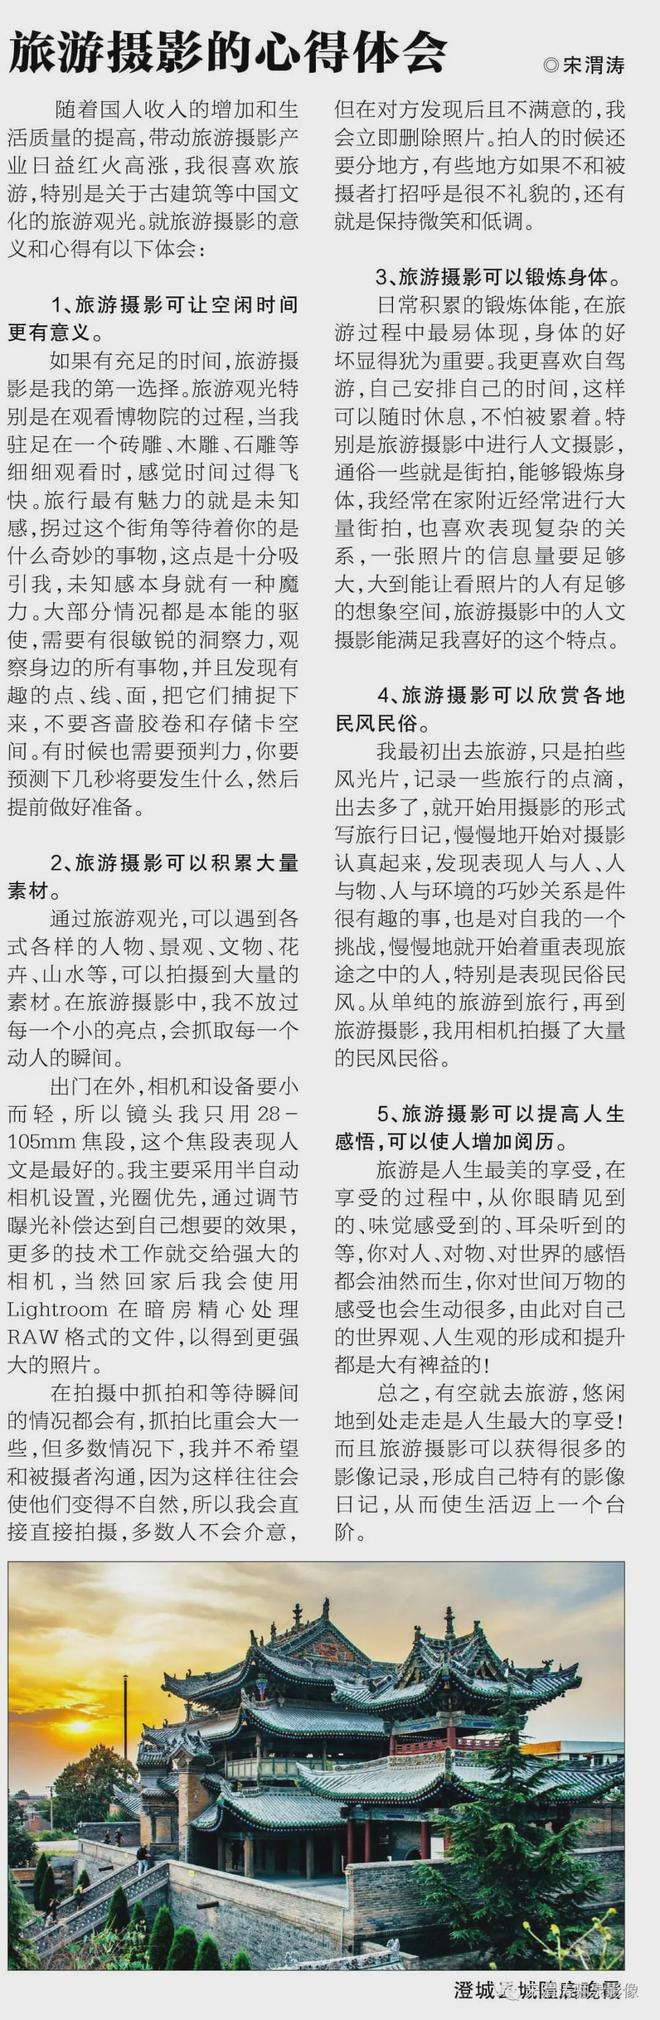 如何投稿中国摄影报和人民摄影报等报刊杂志泛亚电竞(图2)